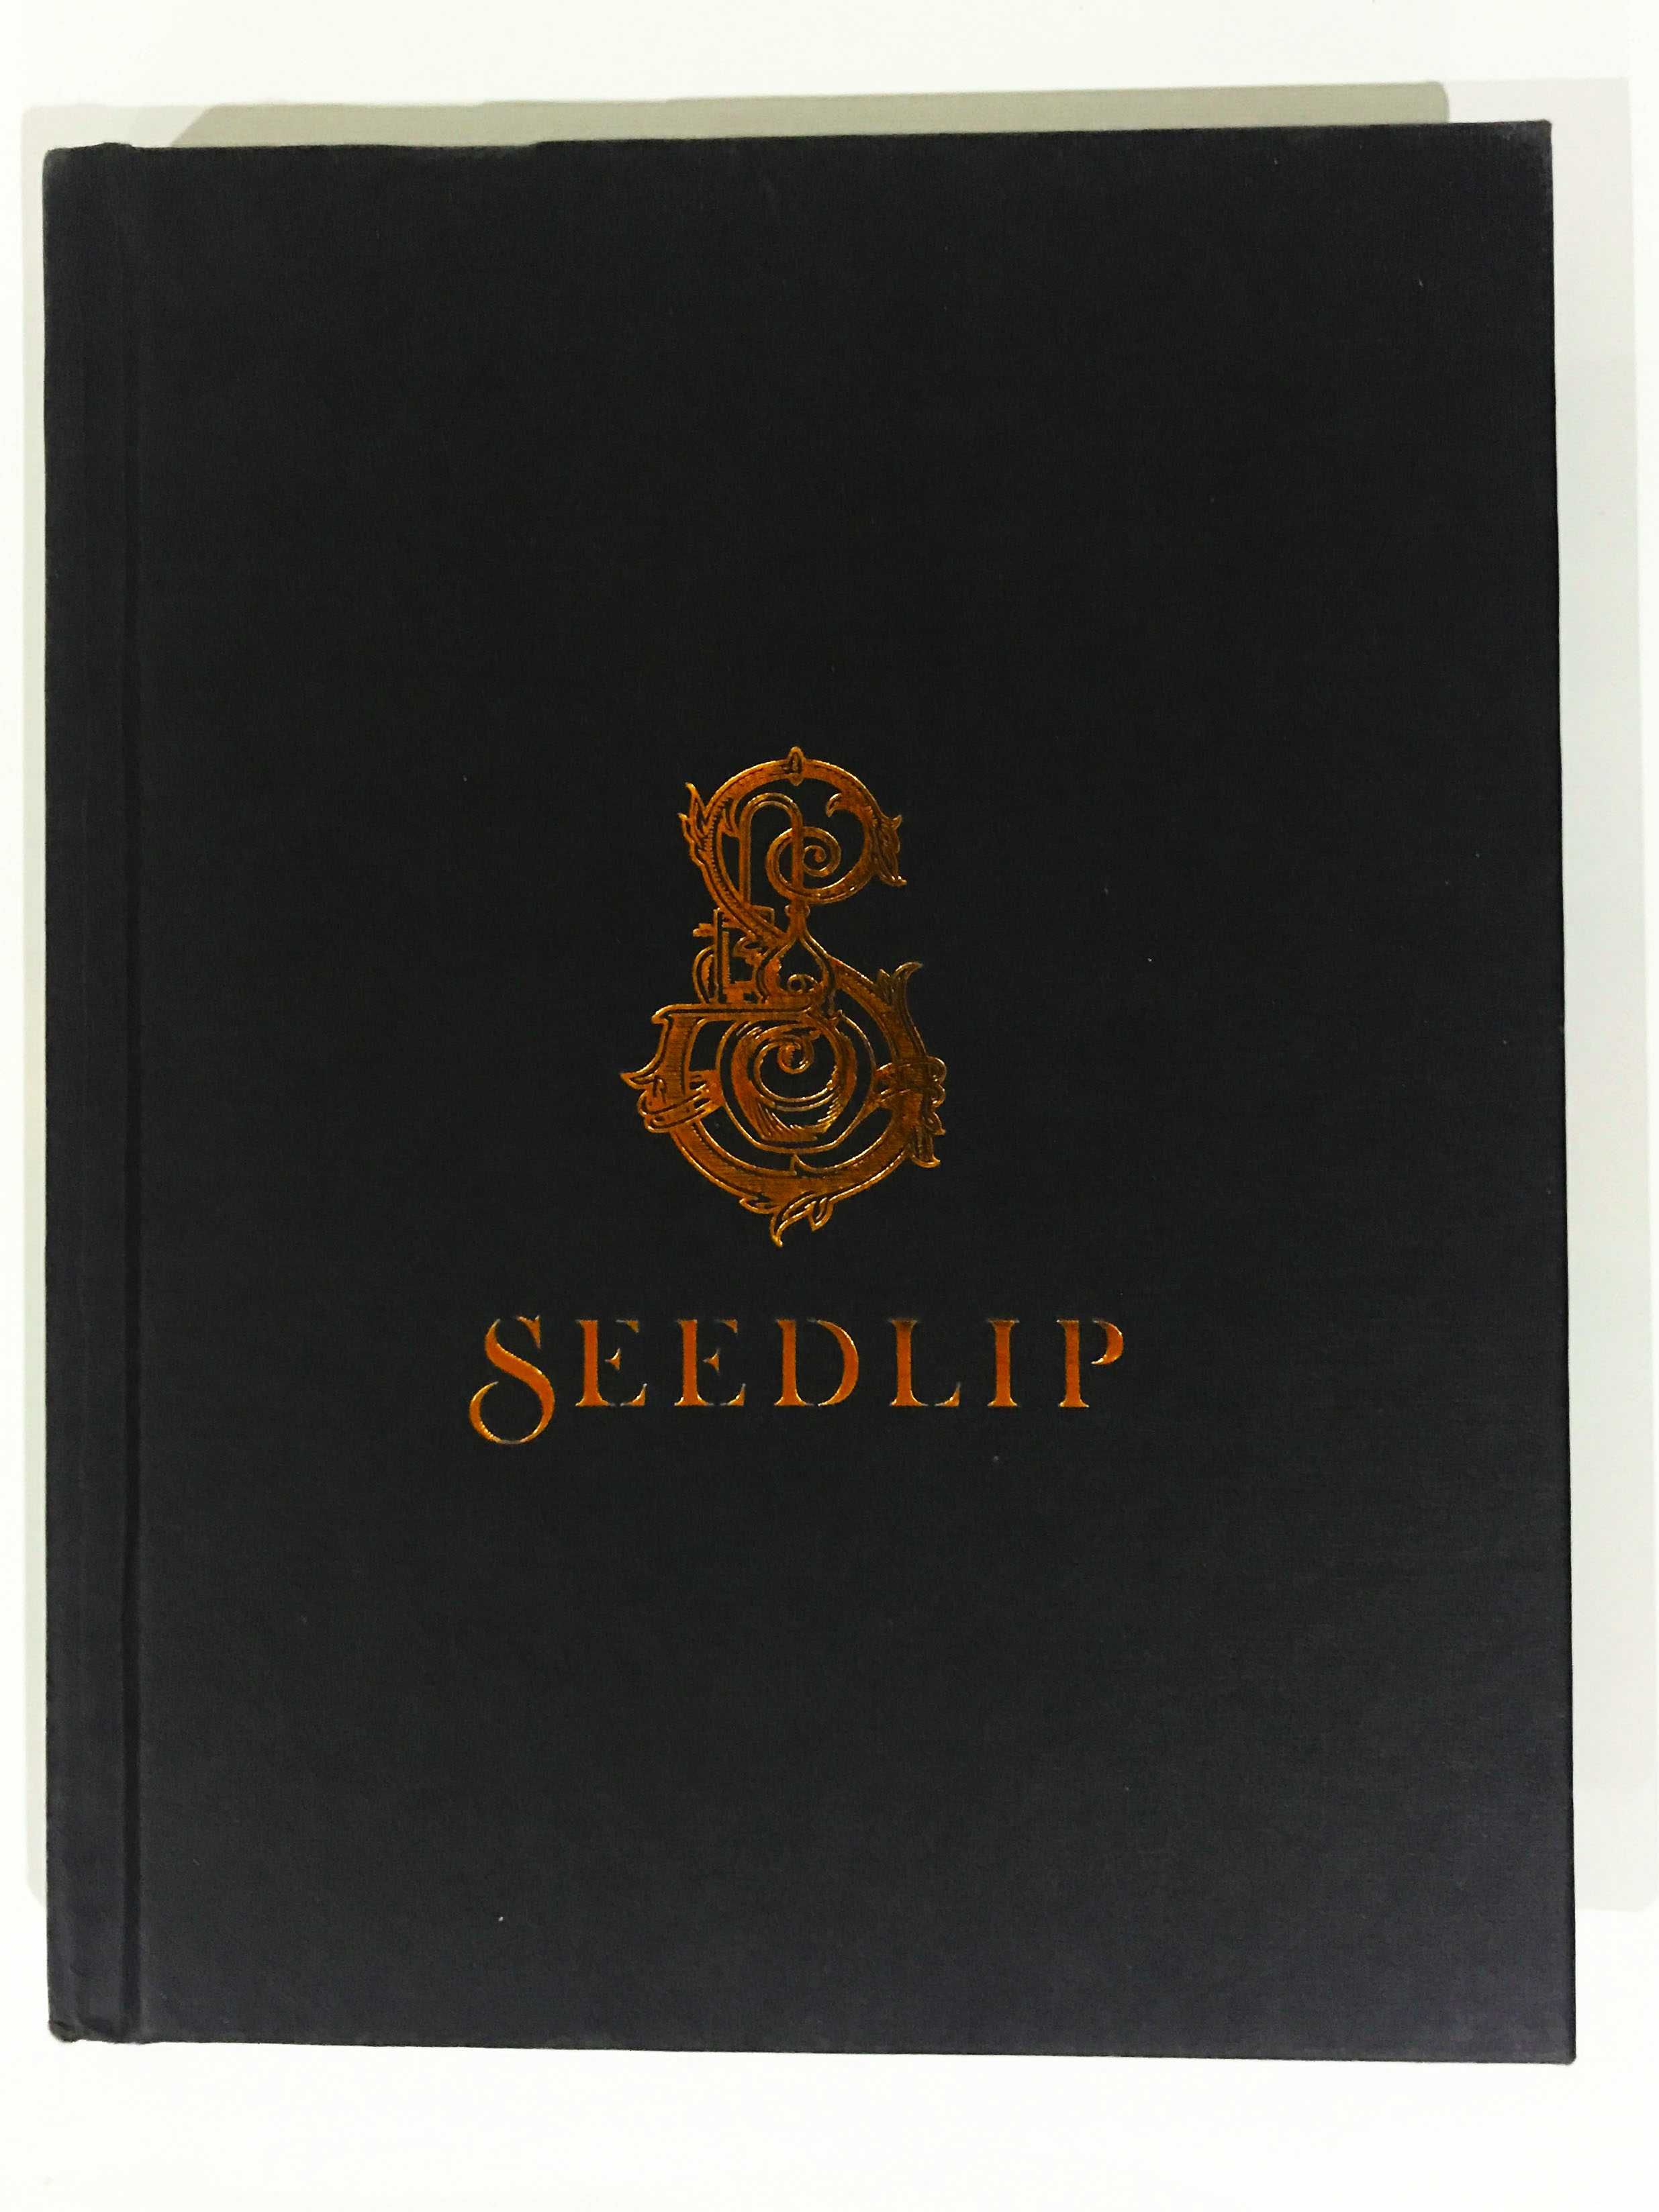 Seedlip: The Cocktail Book - 100 receitas / Oferta dos portes de envio